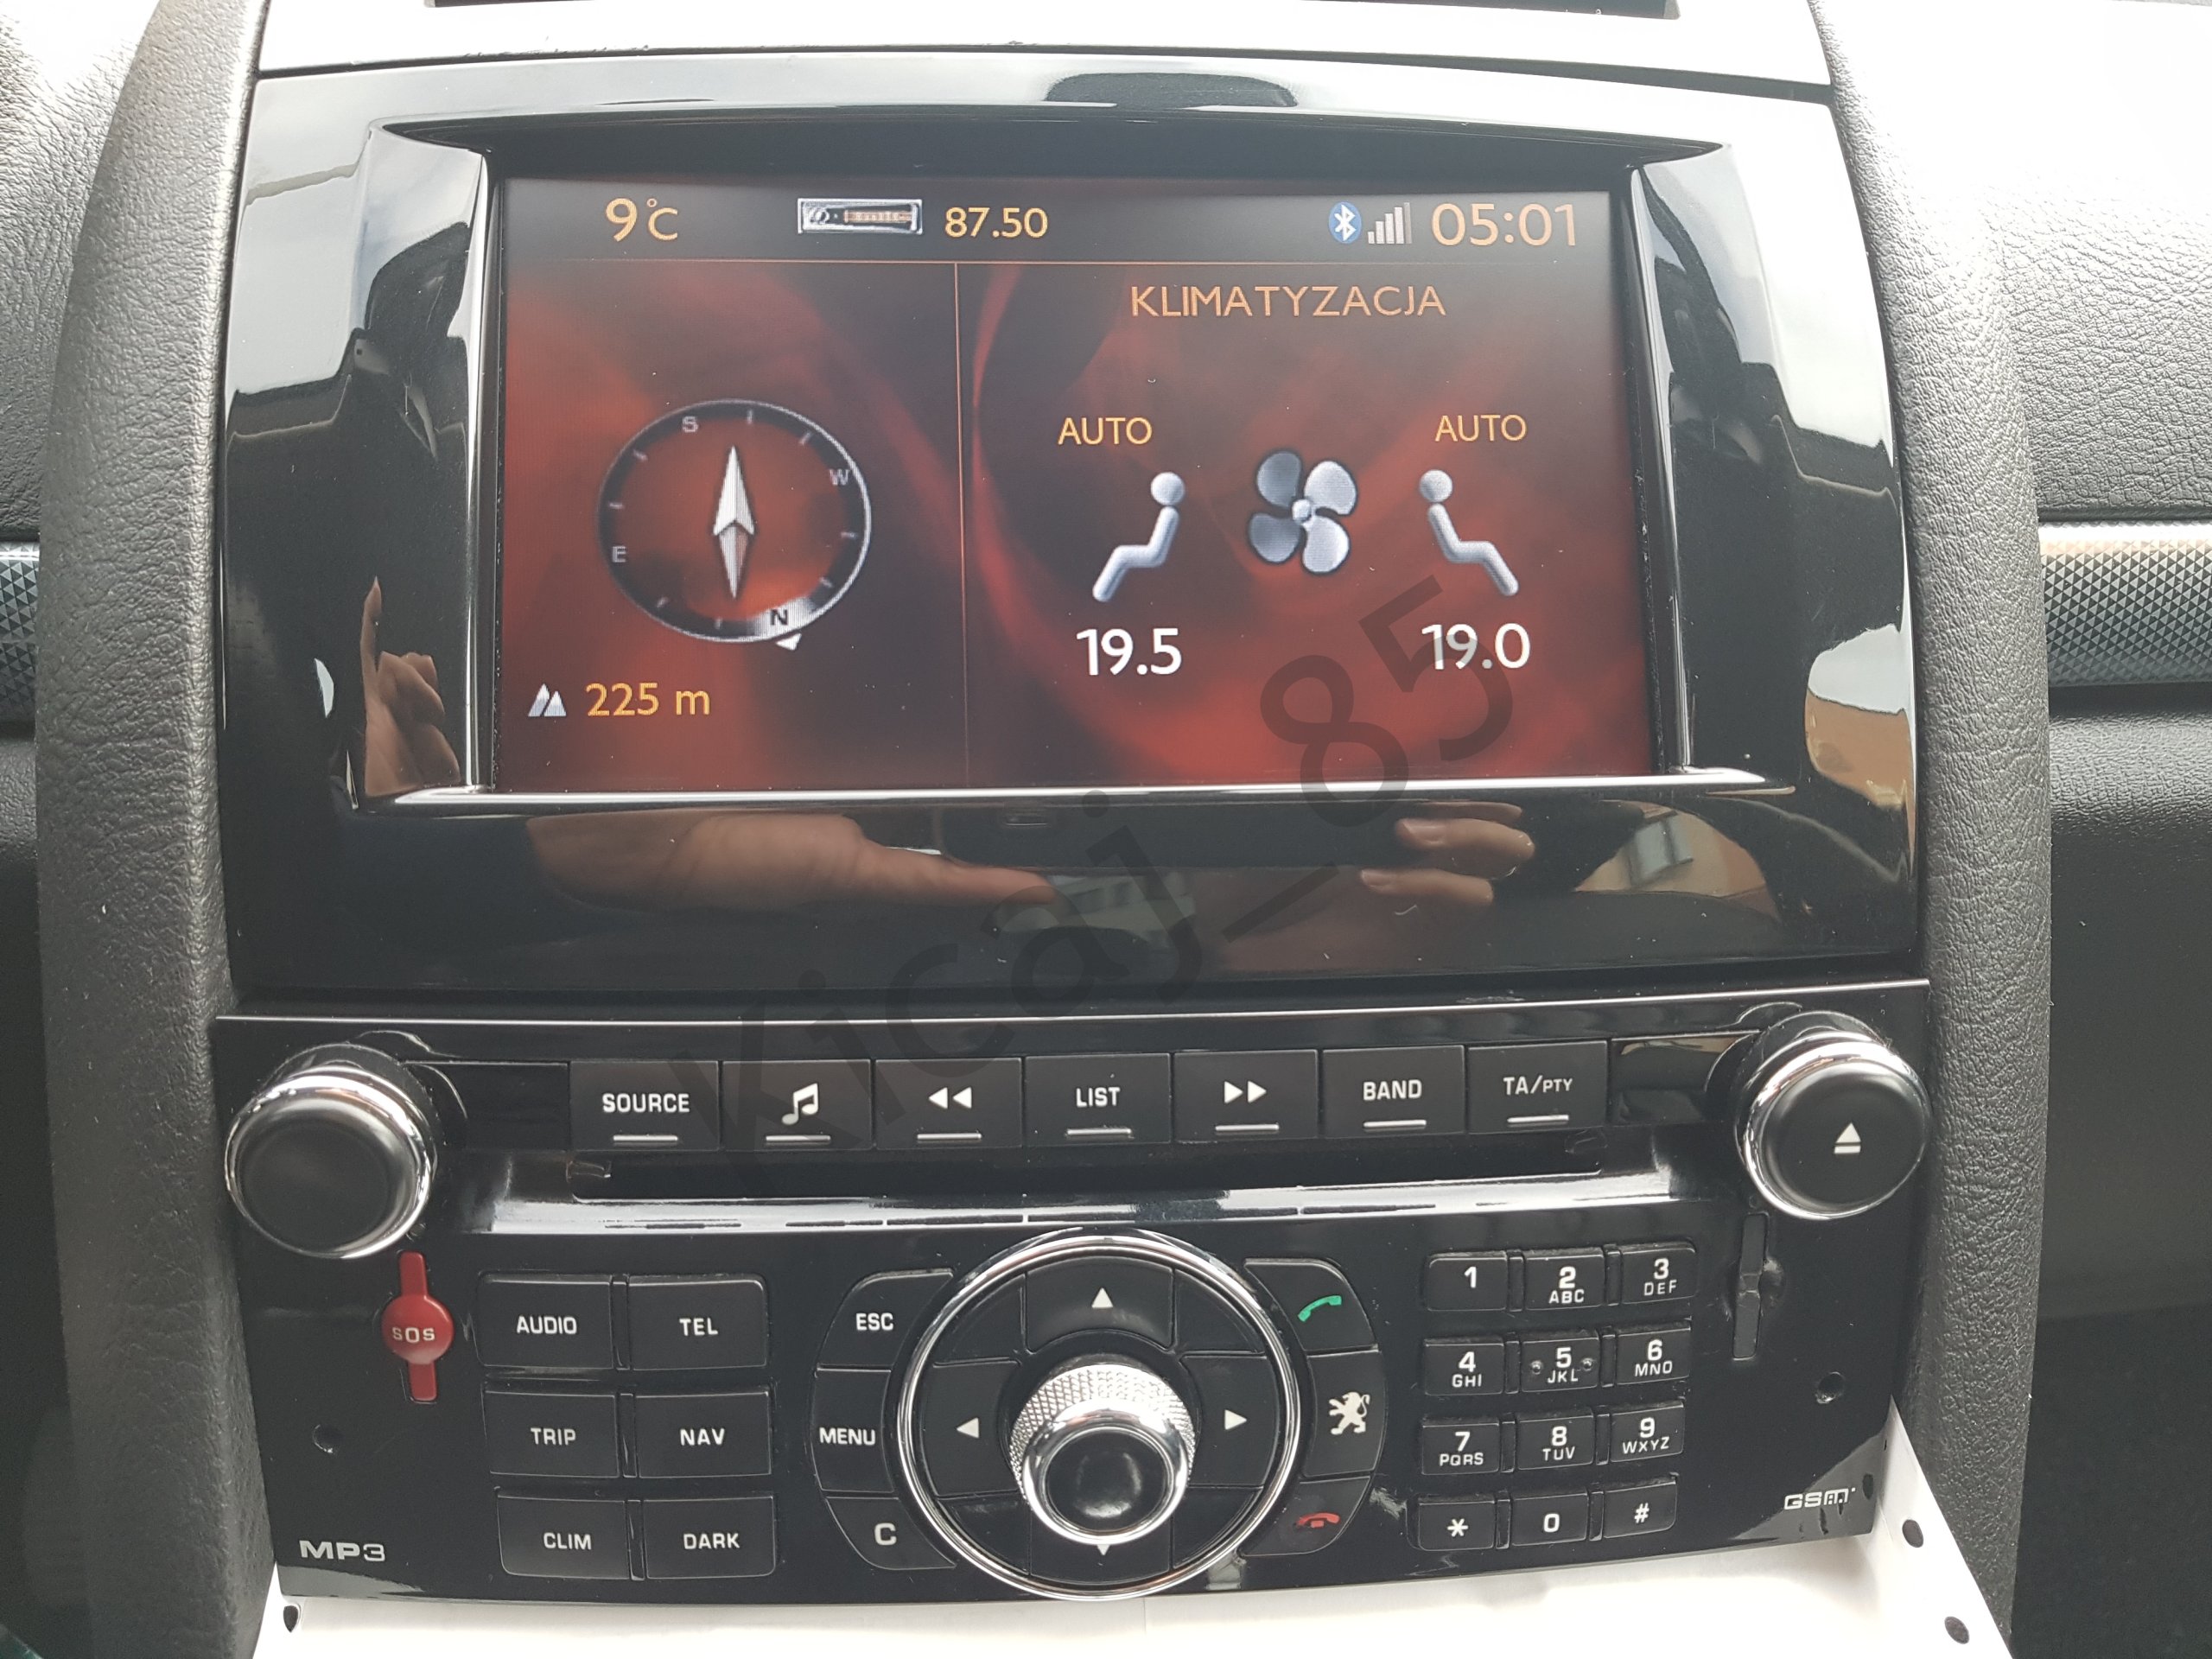 Nawigacja Radio Peugeot 407 Rt5 Bluetooth Zestaw - 7026072243 - Oficjalne Archiwum Allegro